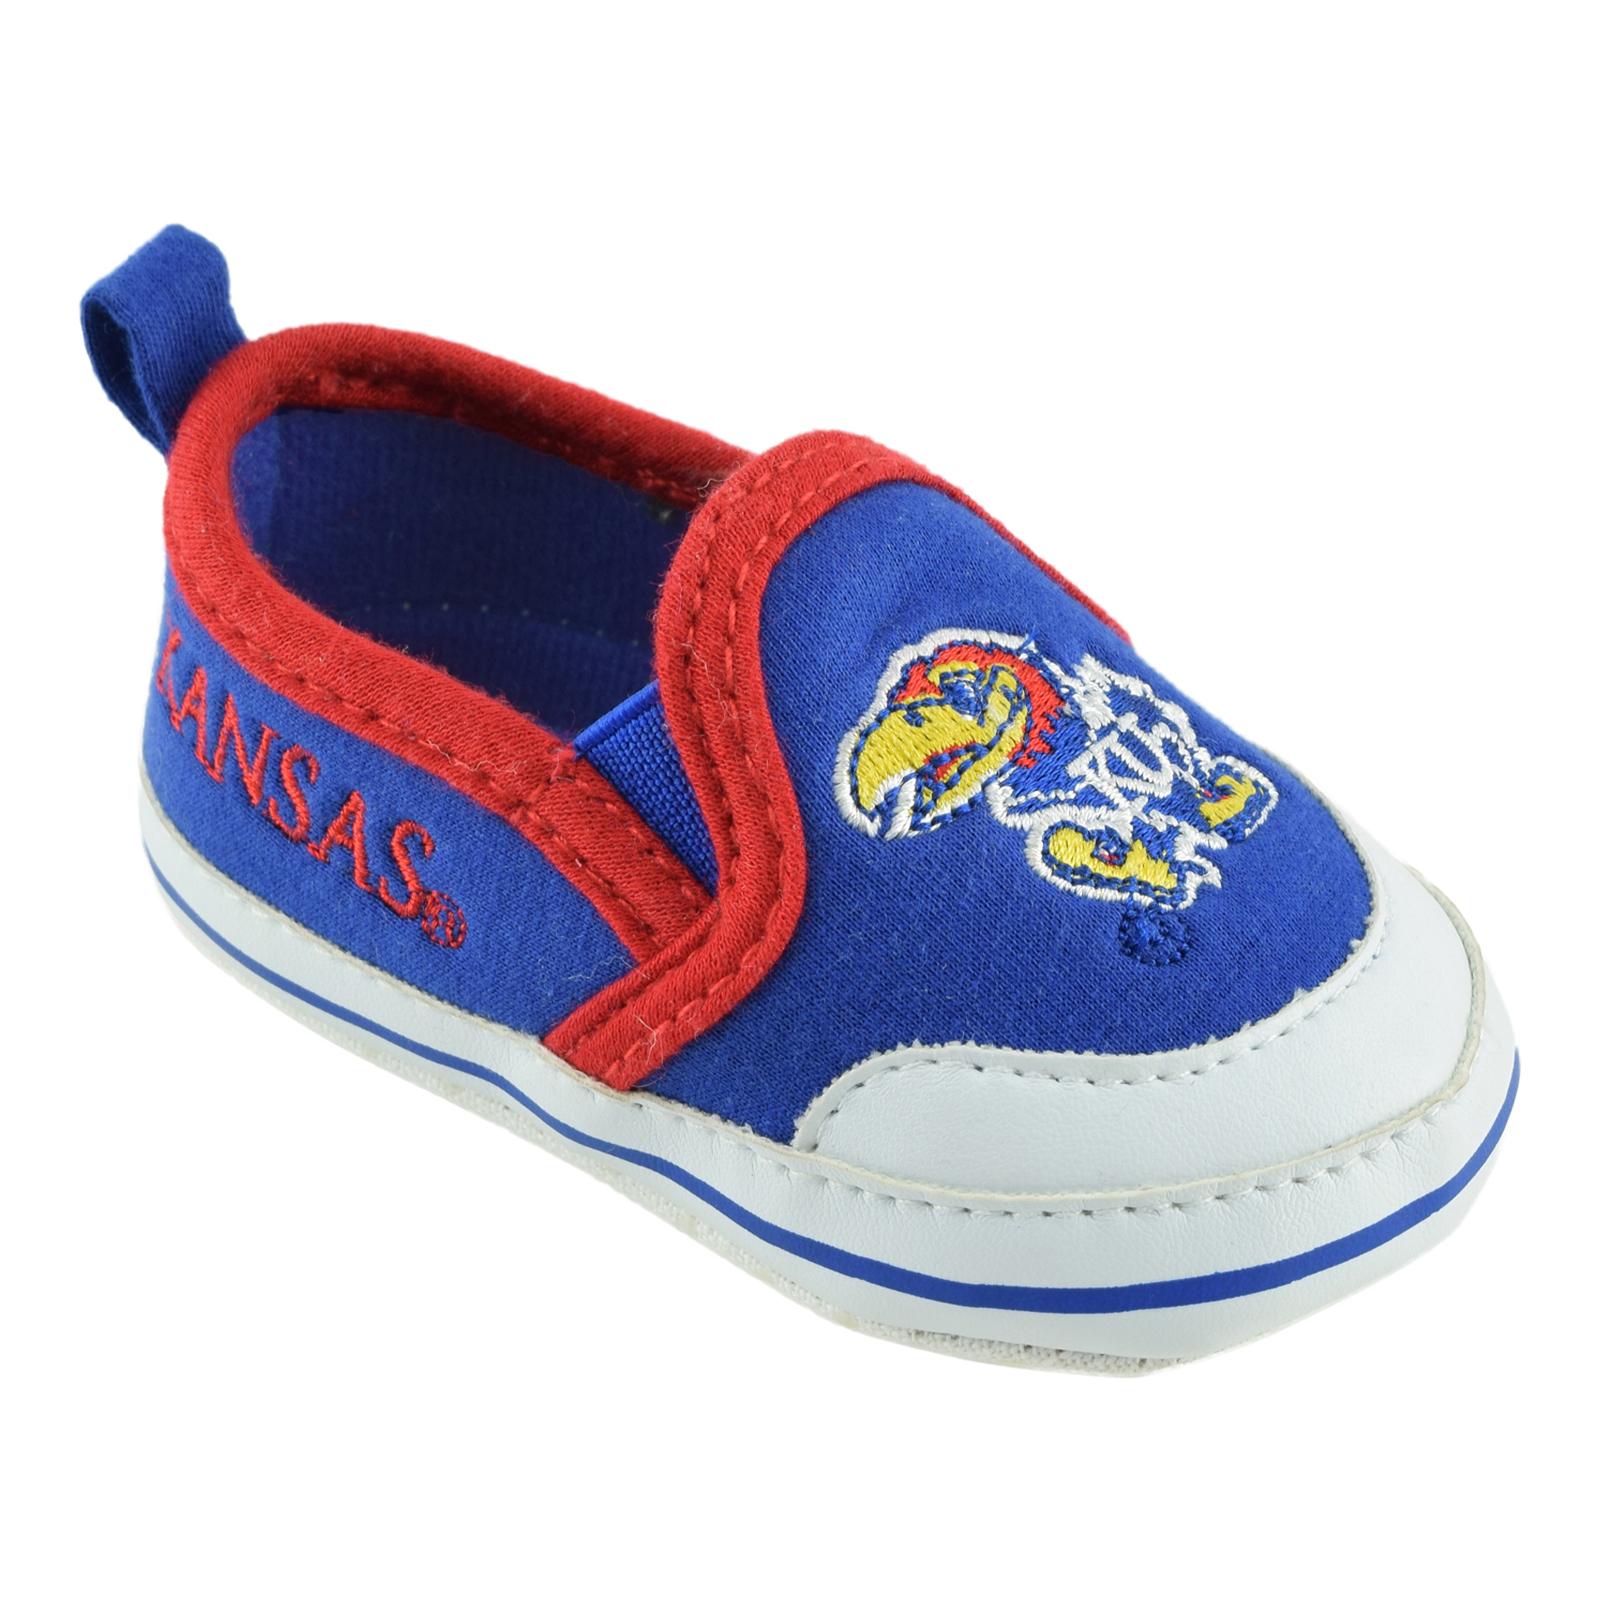 NCAA Newborn & Infant University of Kansas Jayhawks Soft Sole Shoes